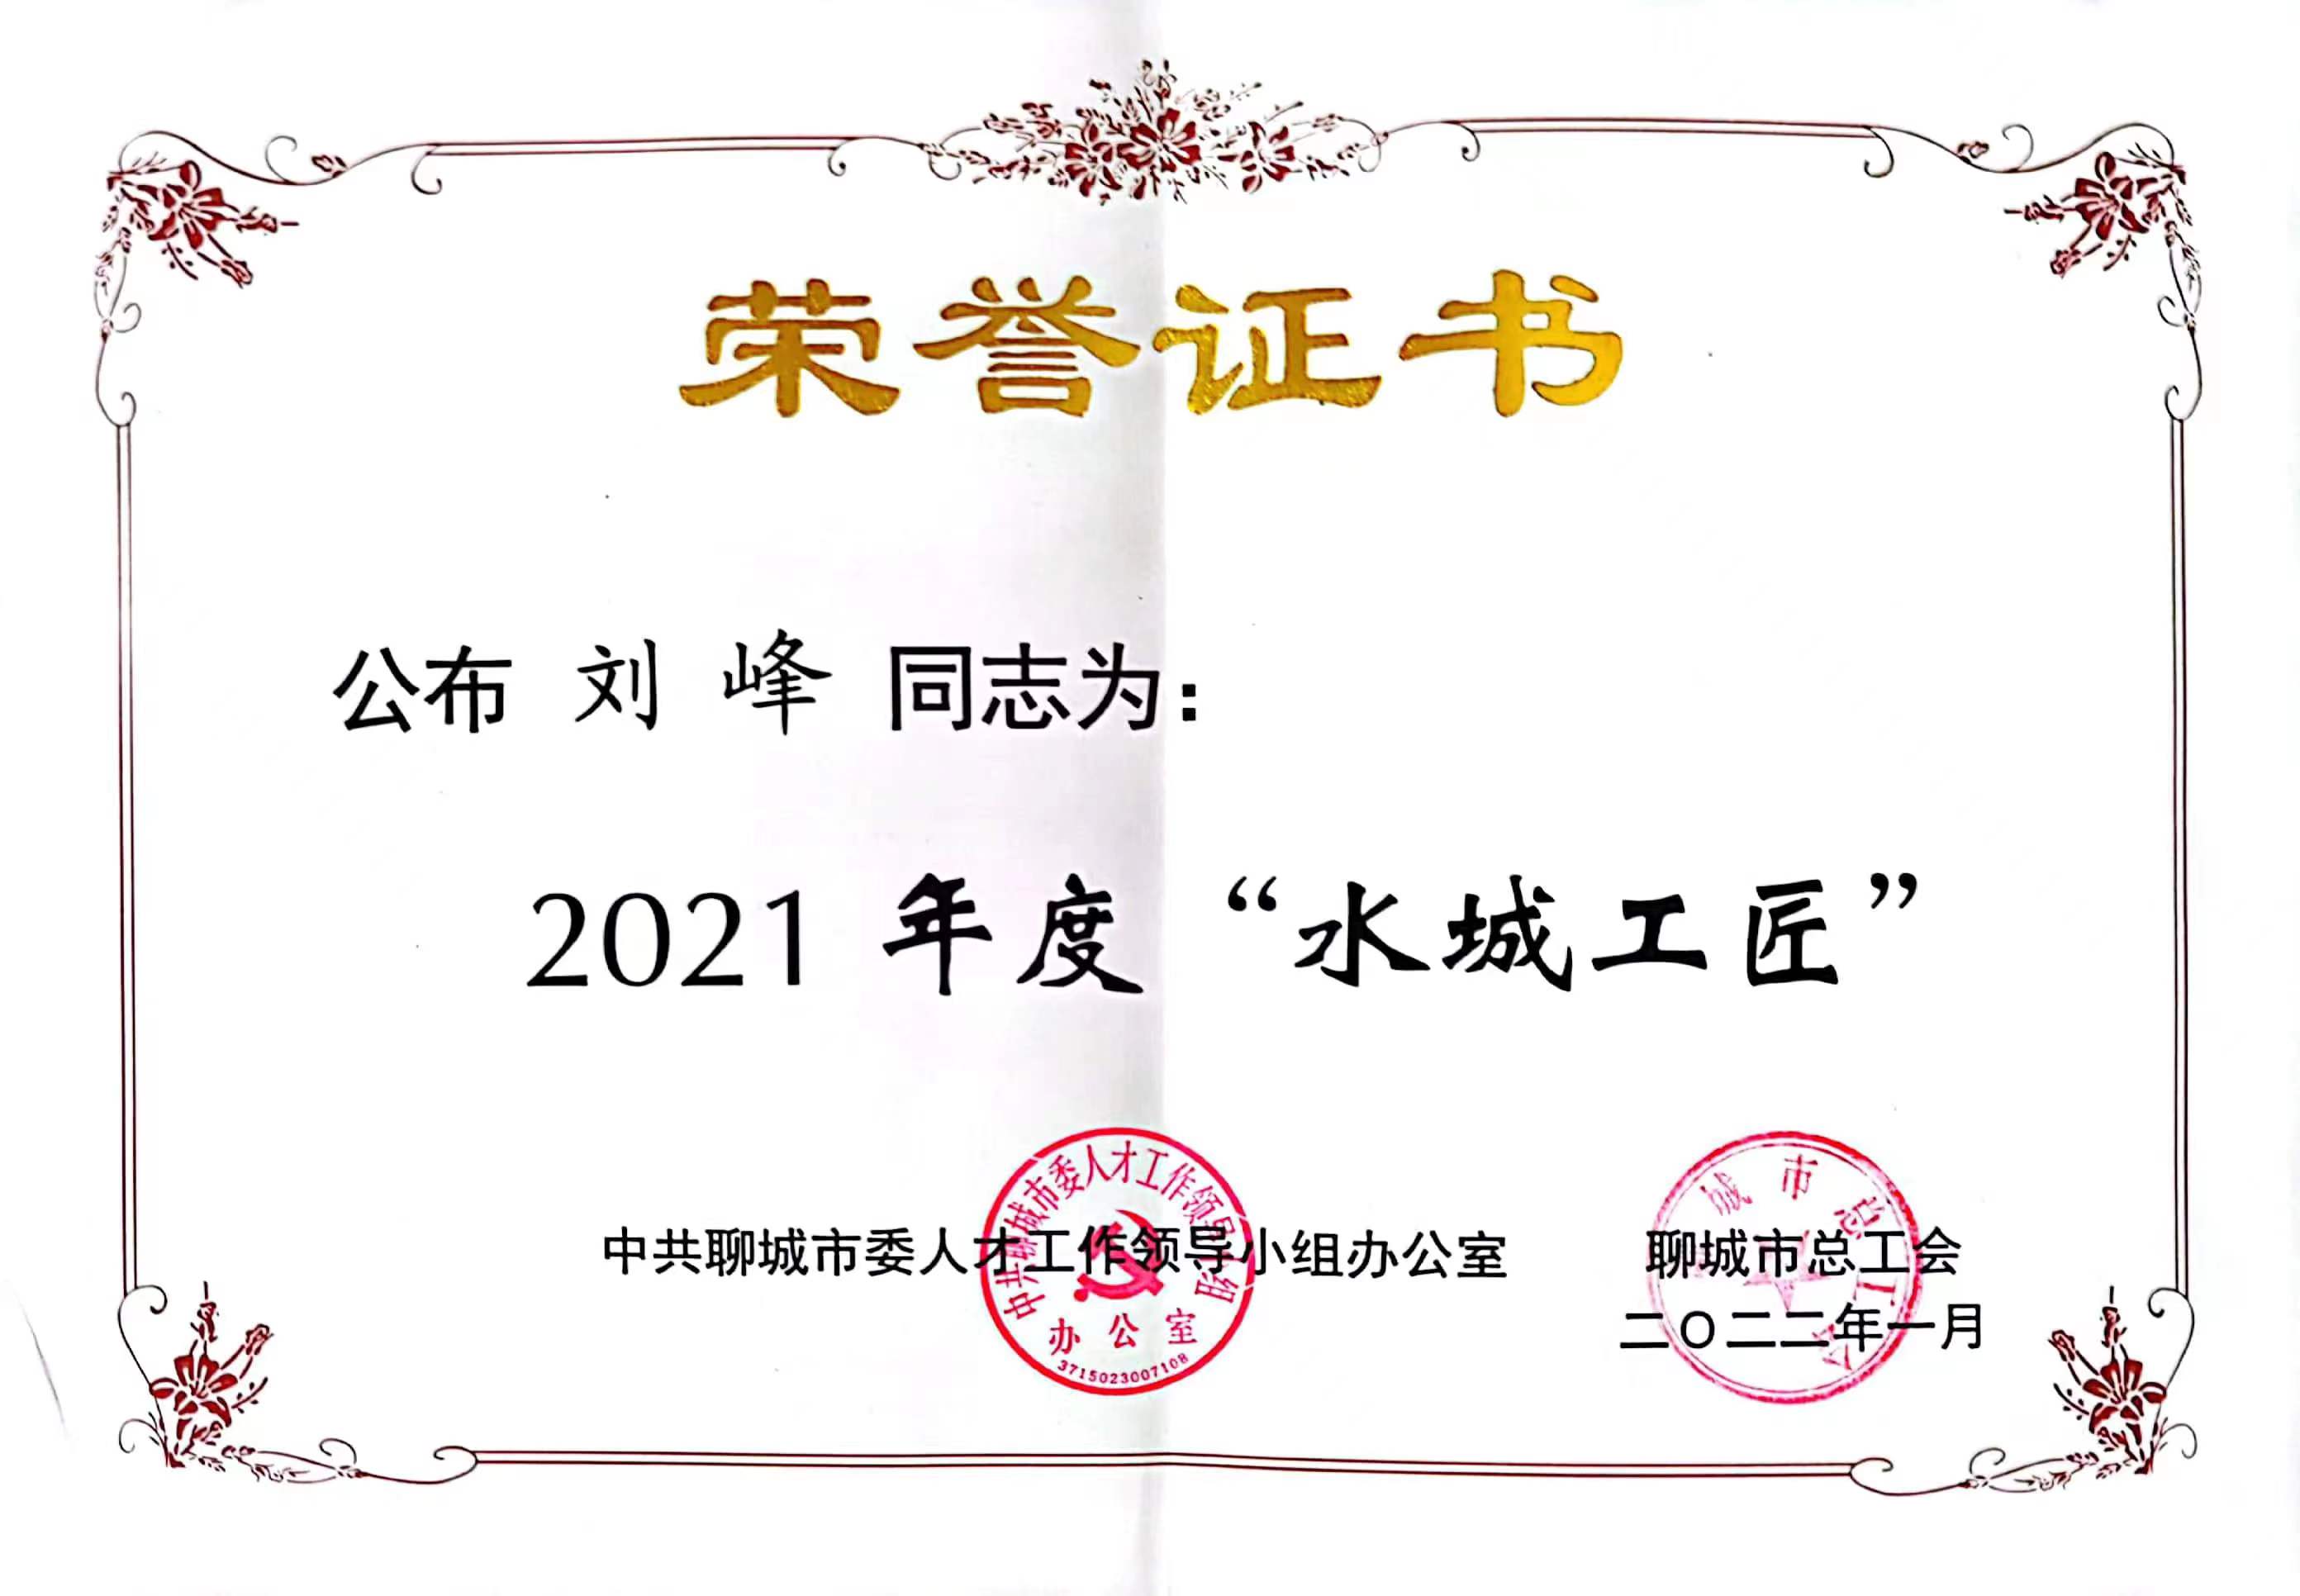 劉峰同志榮獲2021年度‘水城工匠’稱號